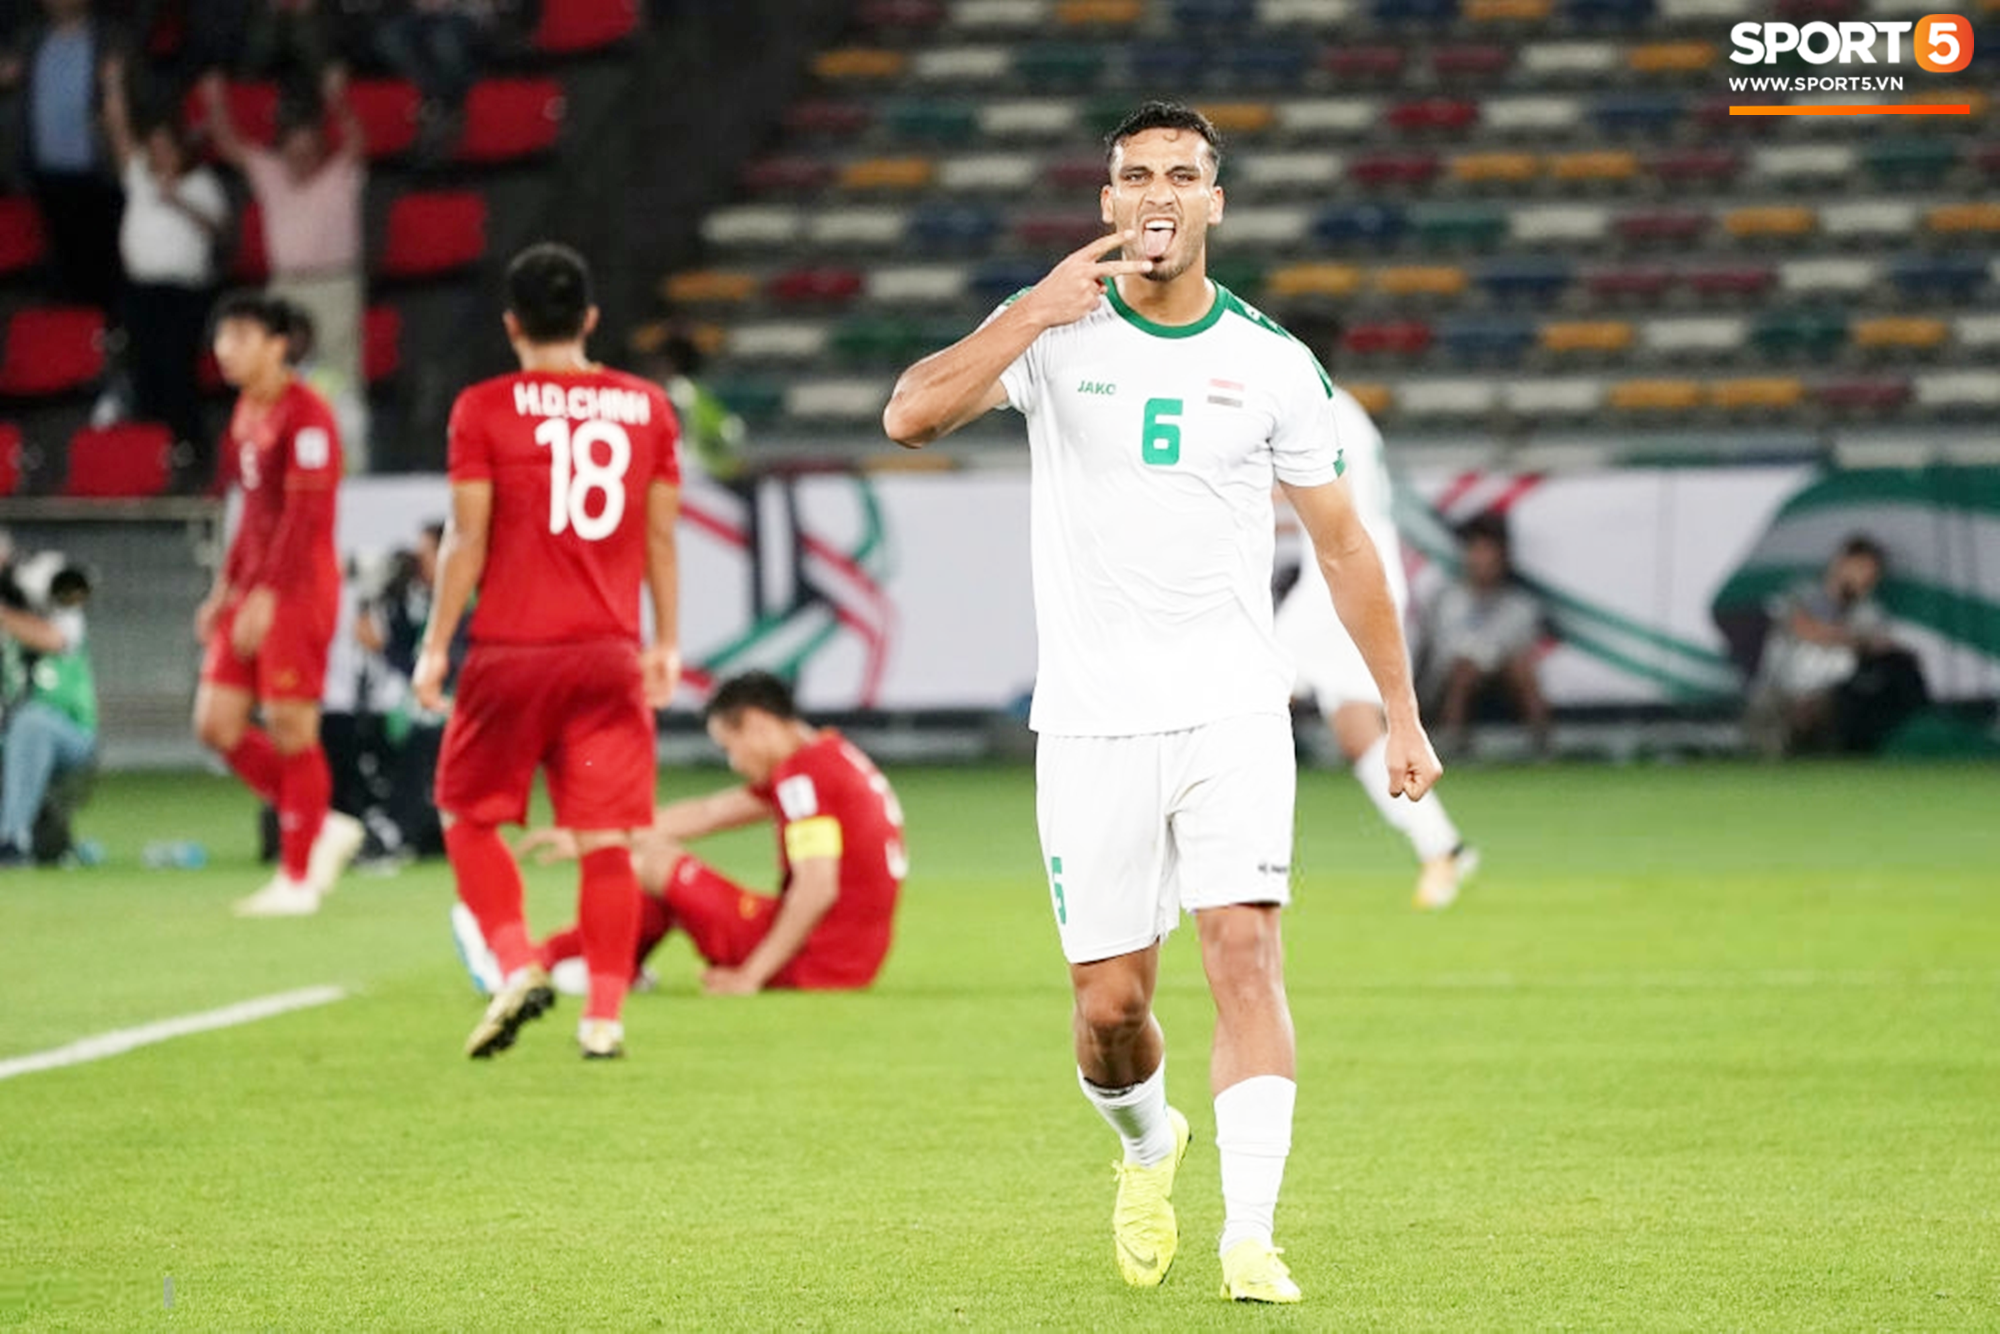 Nóng: Nguyên dàn cầu thủ Iraq từng thắng Việt Nam tại Asian Cup gặp họa lớn, đối mặt với án cấm thi đấu vì lý do này - Ảnh 2.